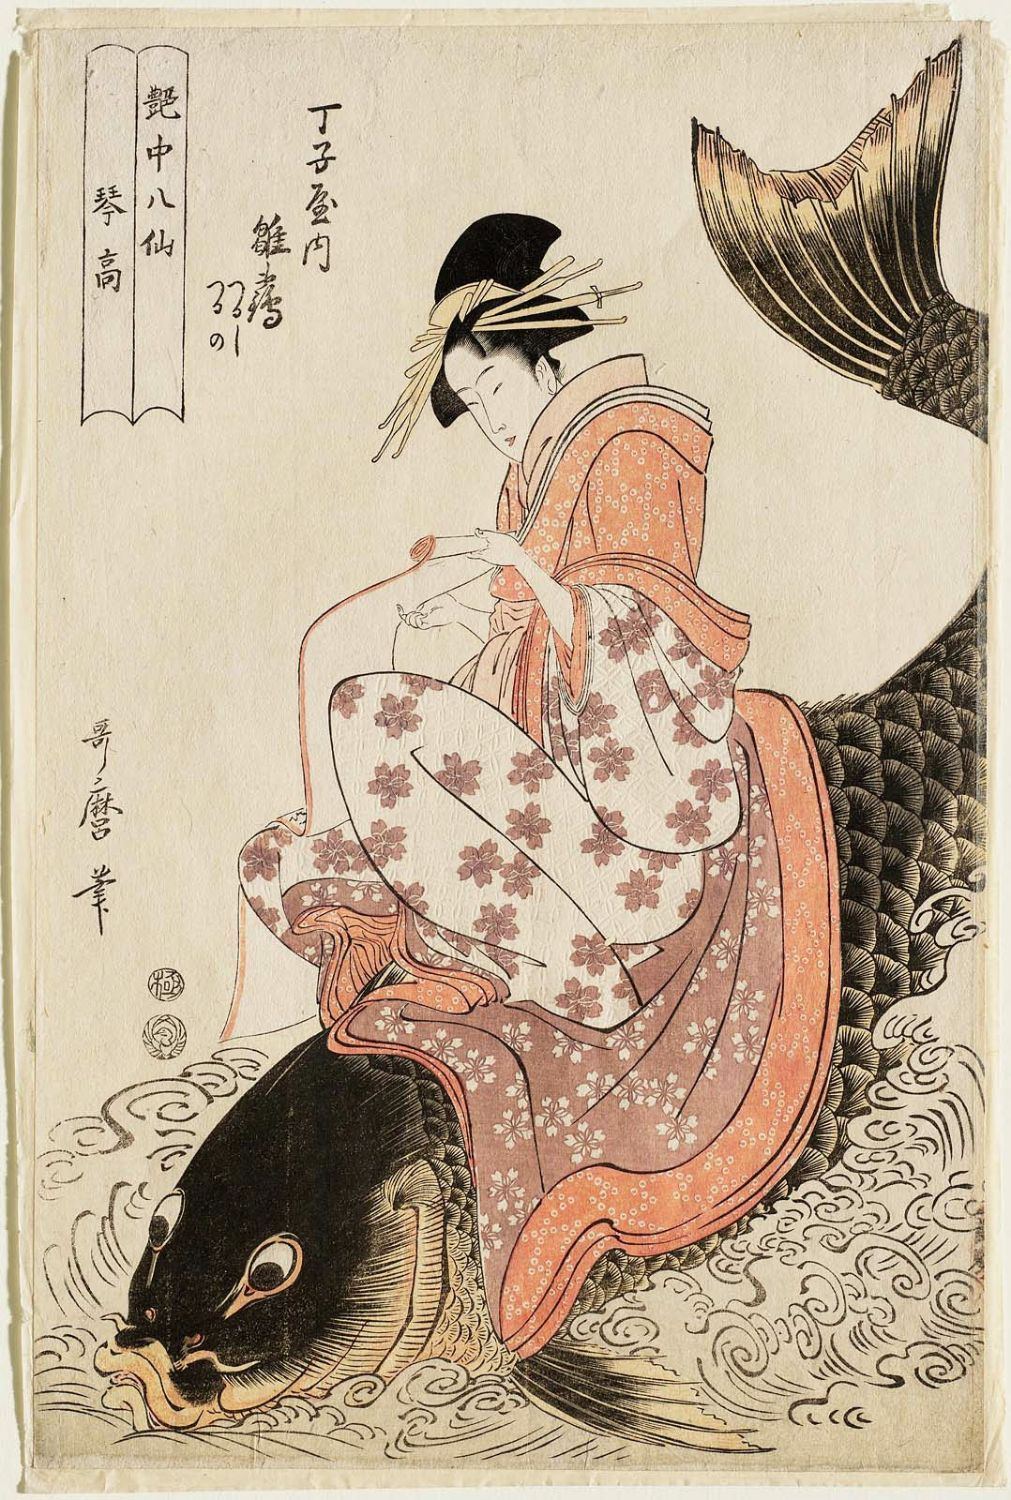 Pretty S. reccomend Utamaro blog sex